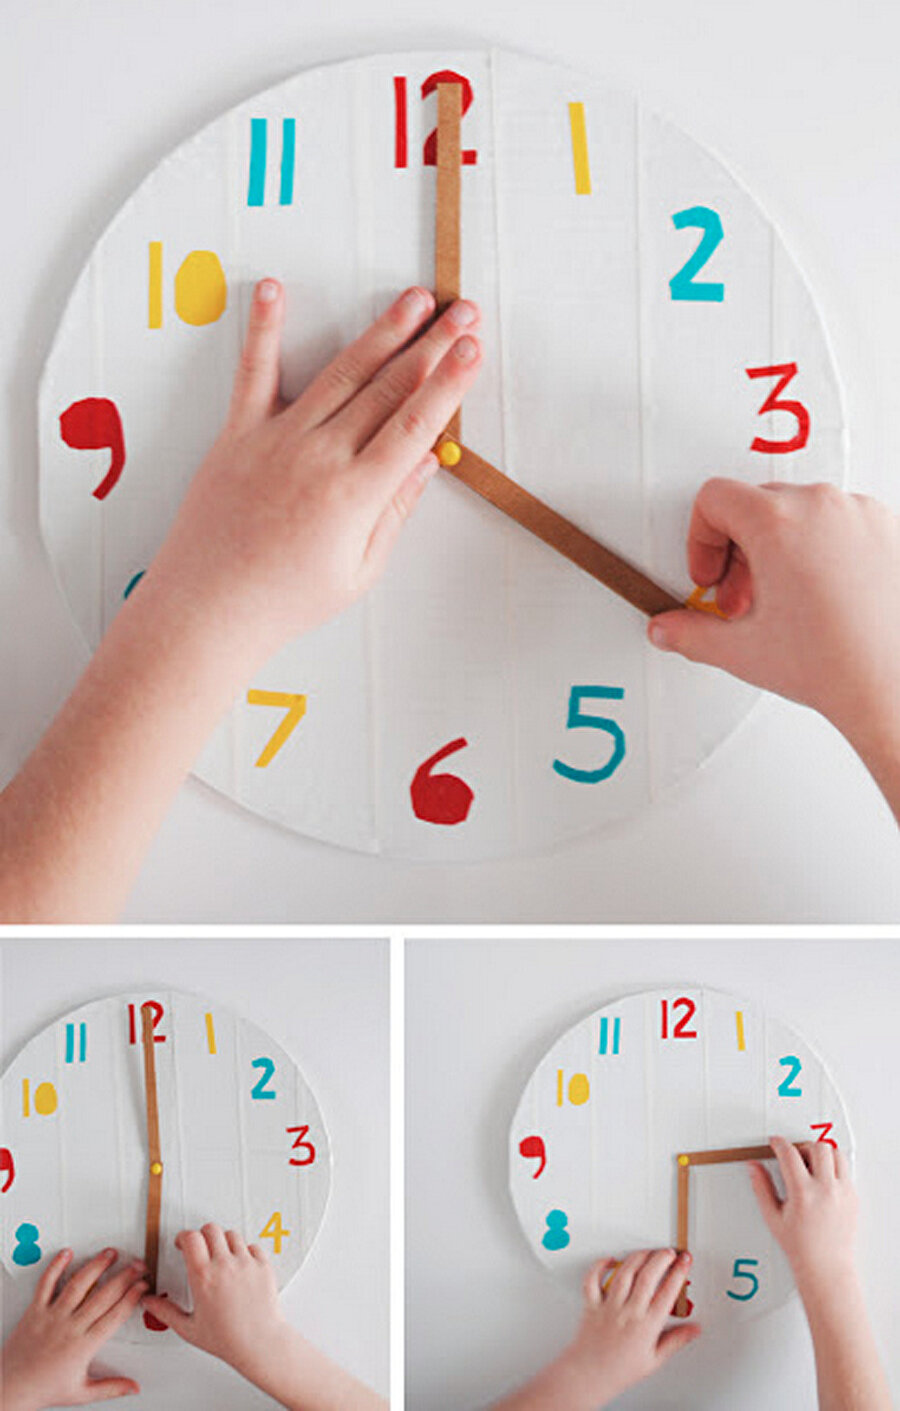 Сделать часы для детей своими руками: Главная страница сайта